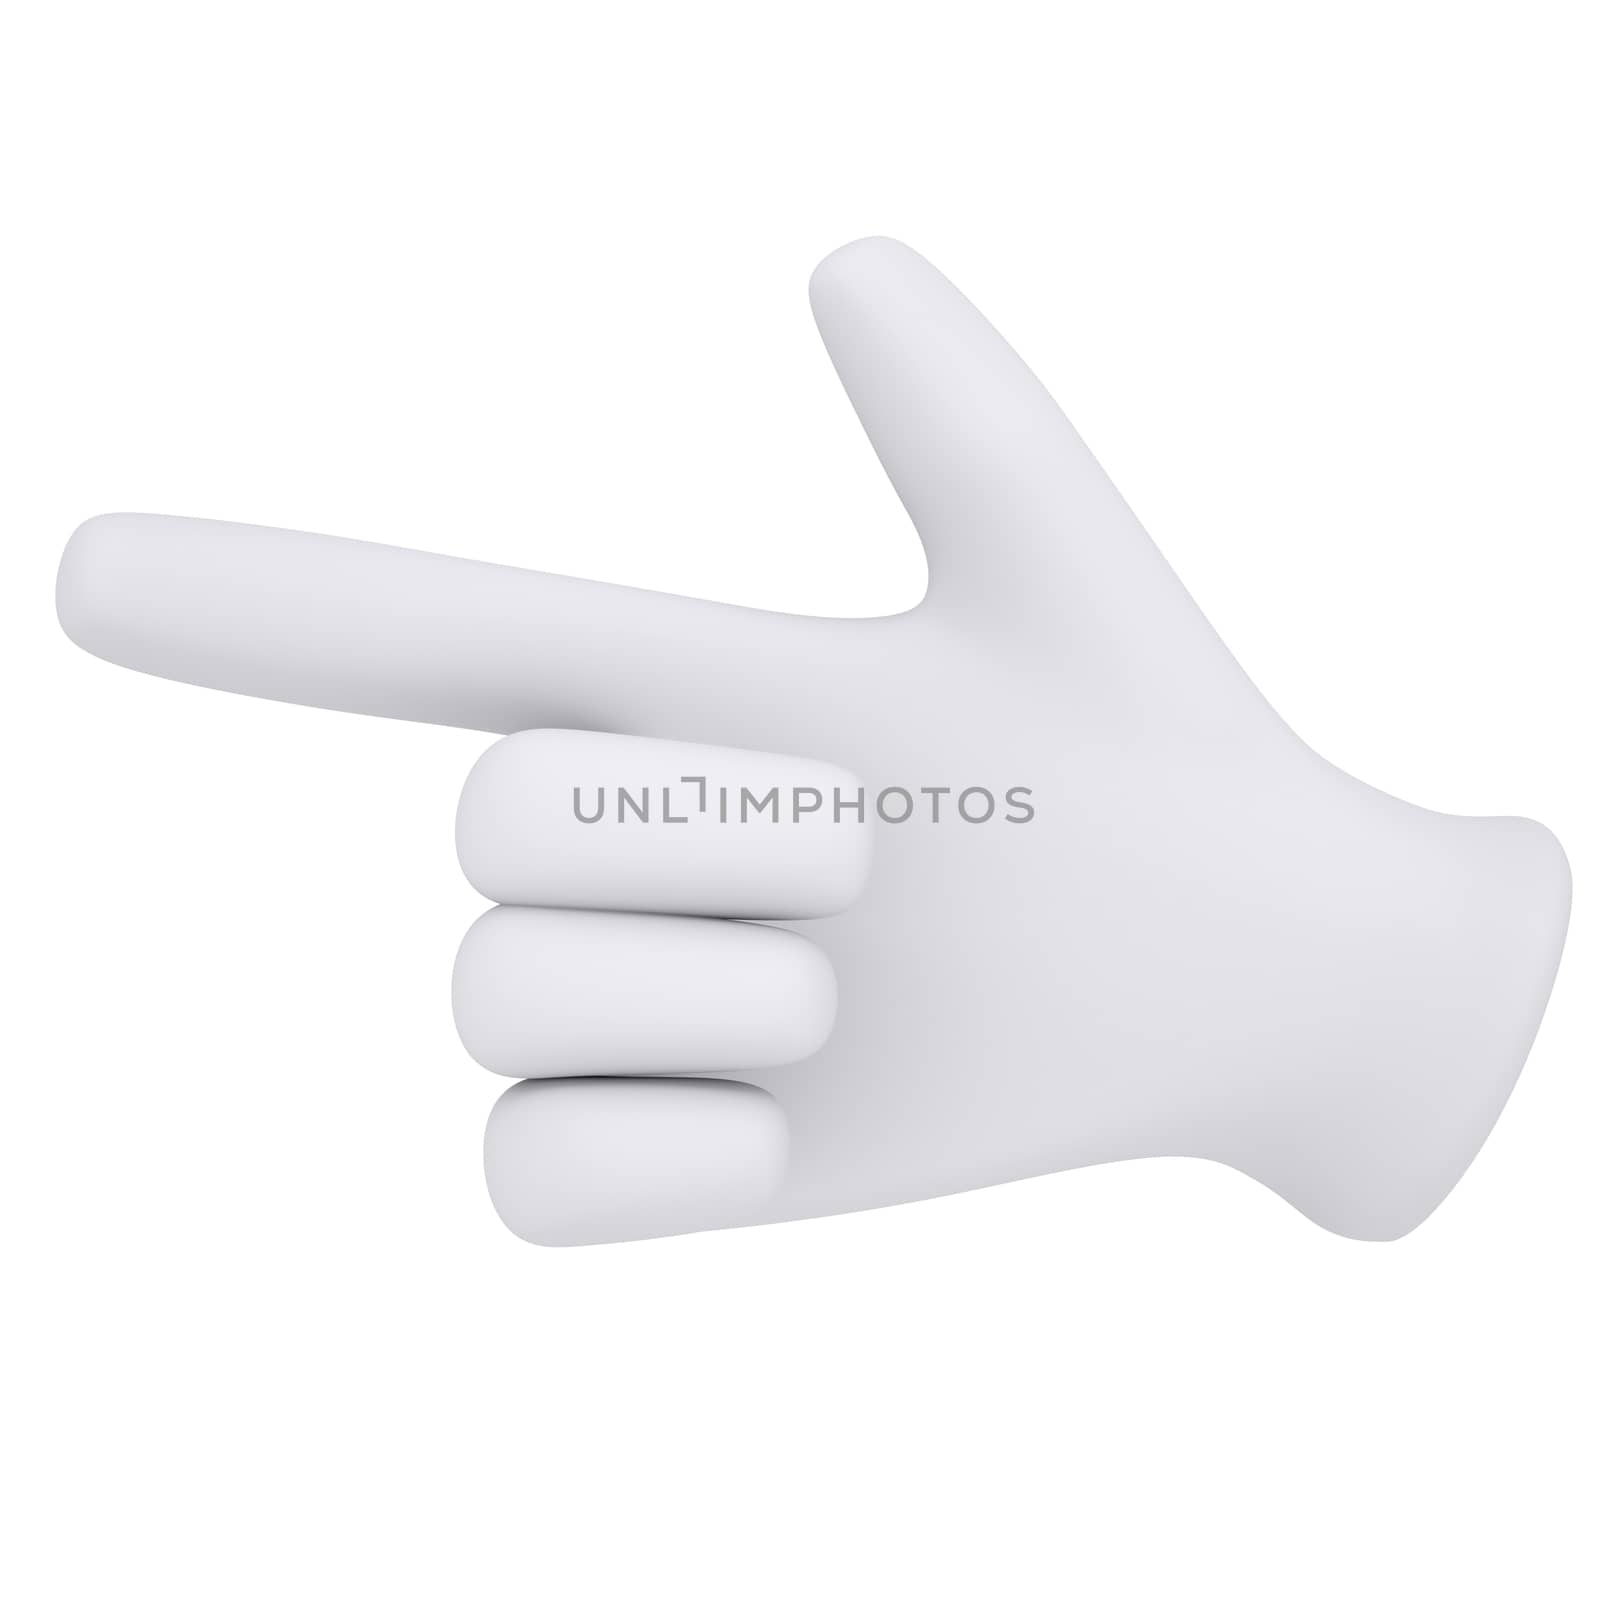 White gloves. Forefinger shows. 3d render isolated on white background